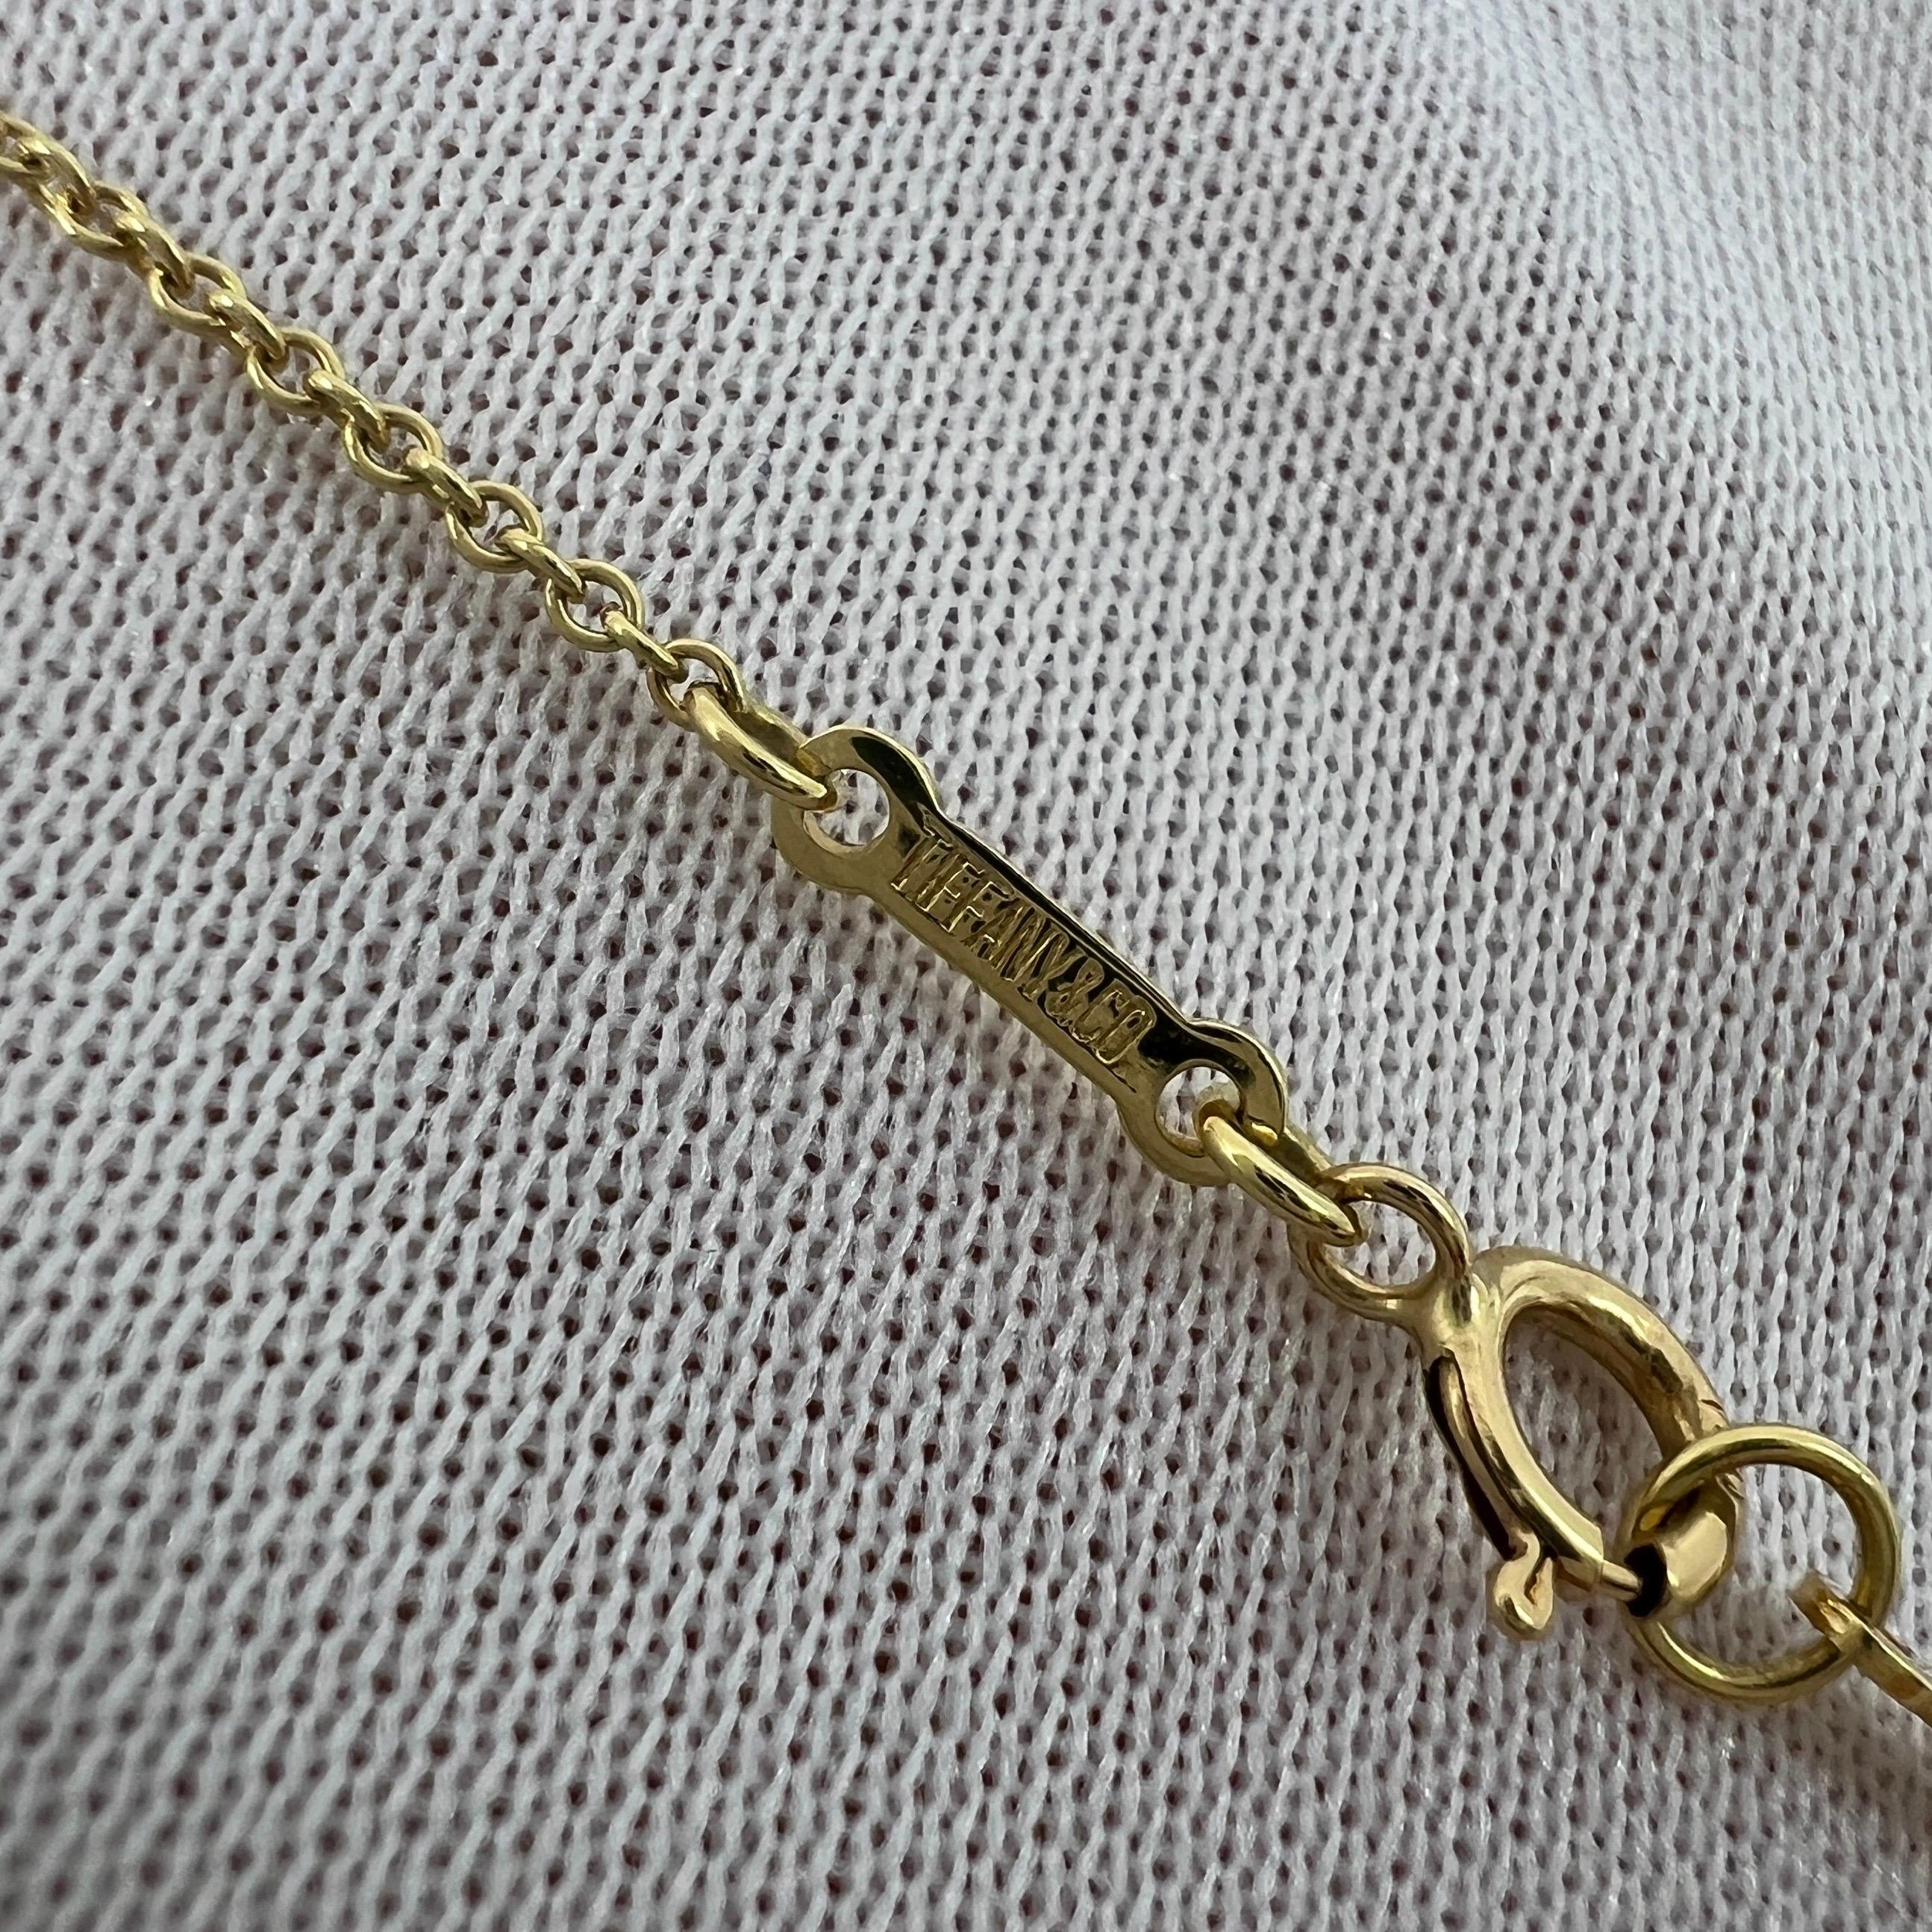 Vintage Tiffany & Co. Elsa Peretti, collier pendentif cœur ouvert en or 18 carats 15 mm 6